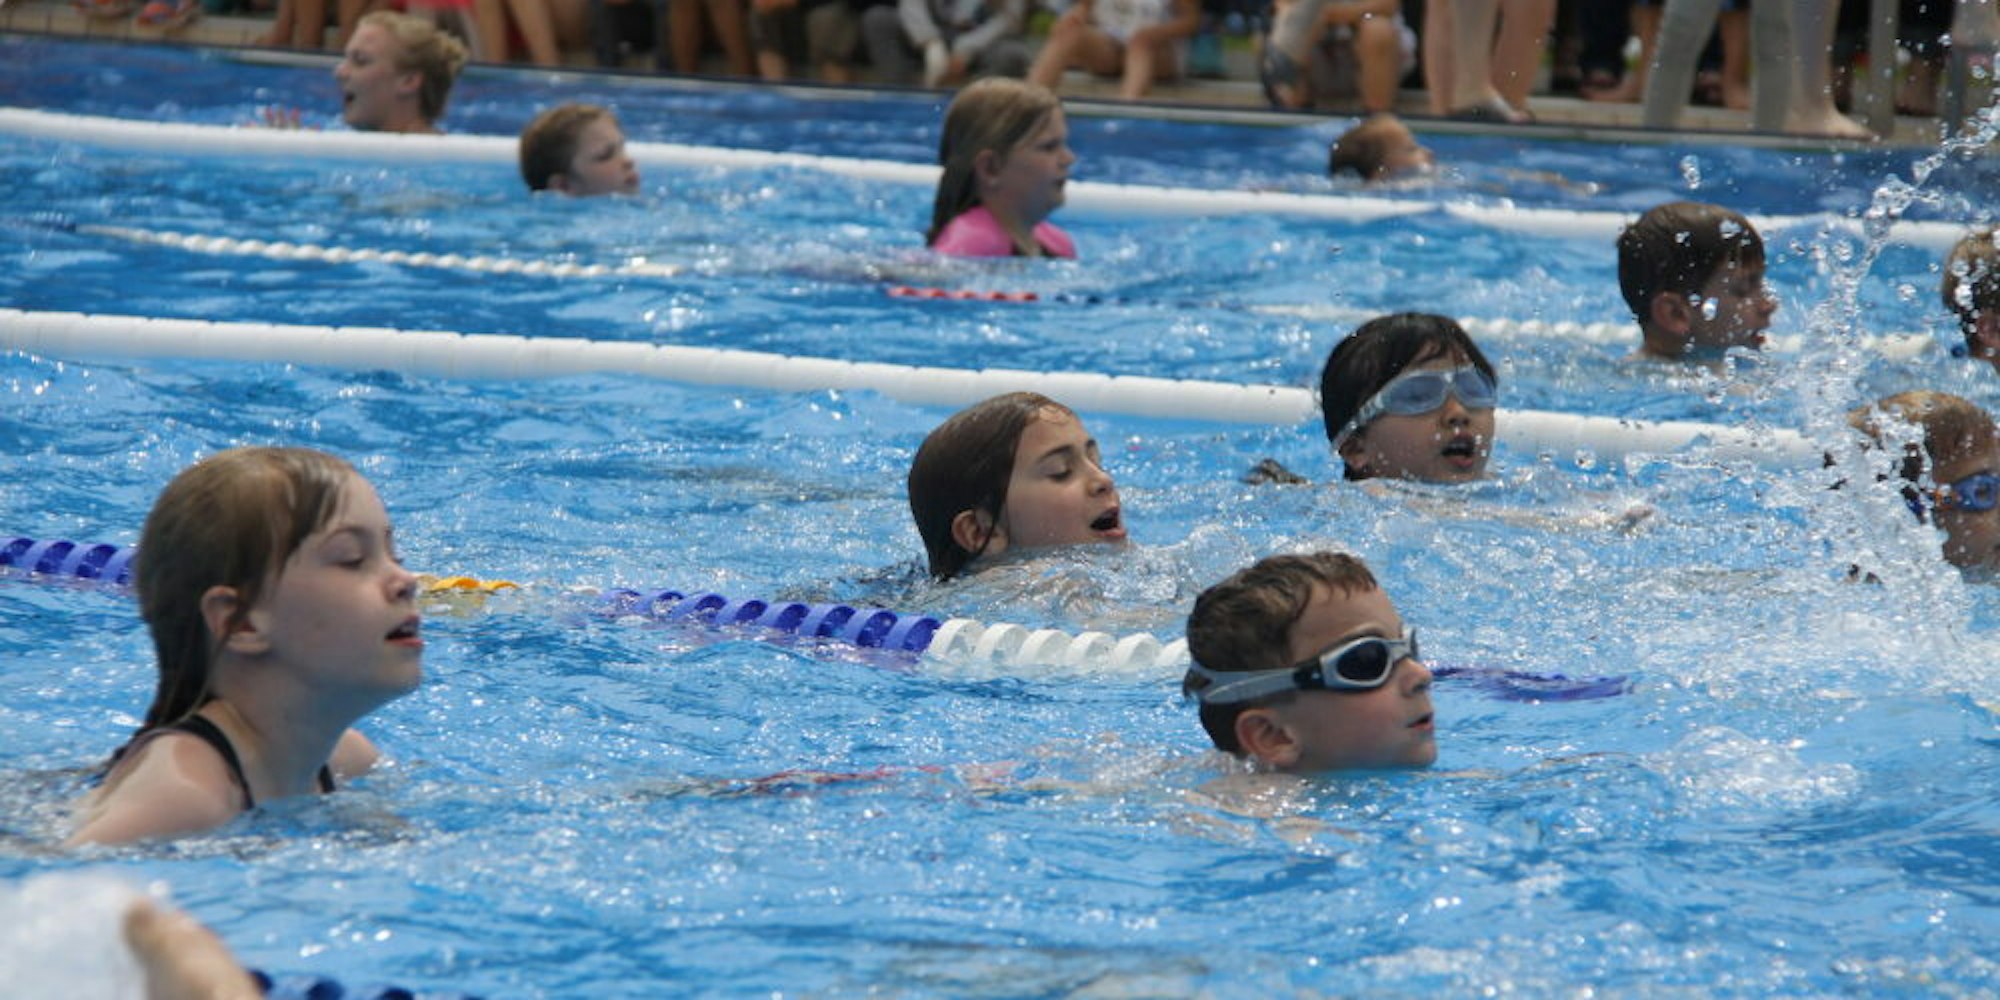 Besonders die kleinen Schwimmerinnen und Schwimmer freuen sich auf Wettkämpfe, wie etwa den Kindertriathlon im Türnicher Freibad.